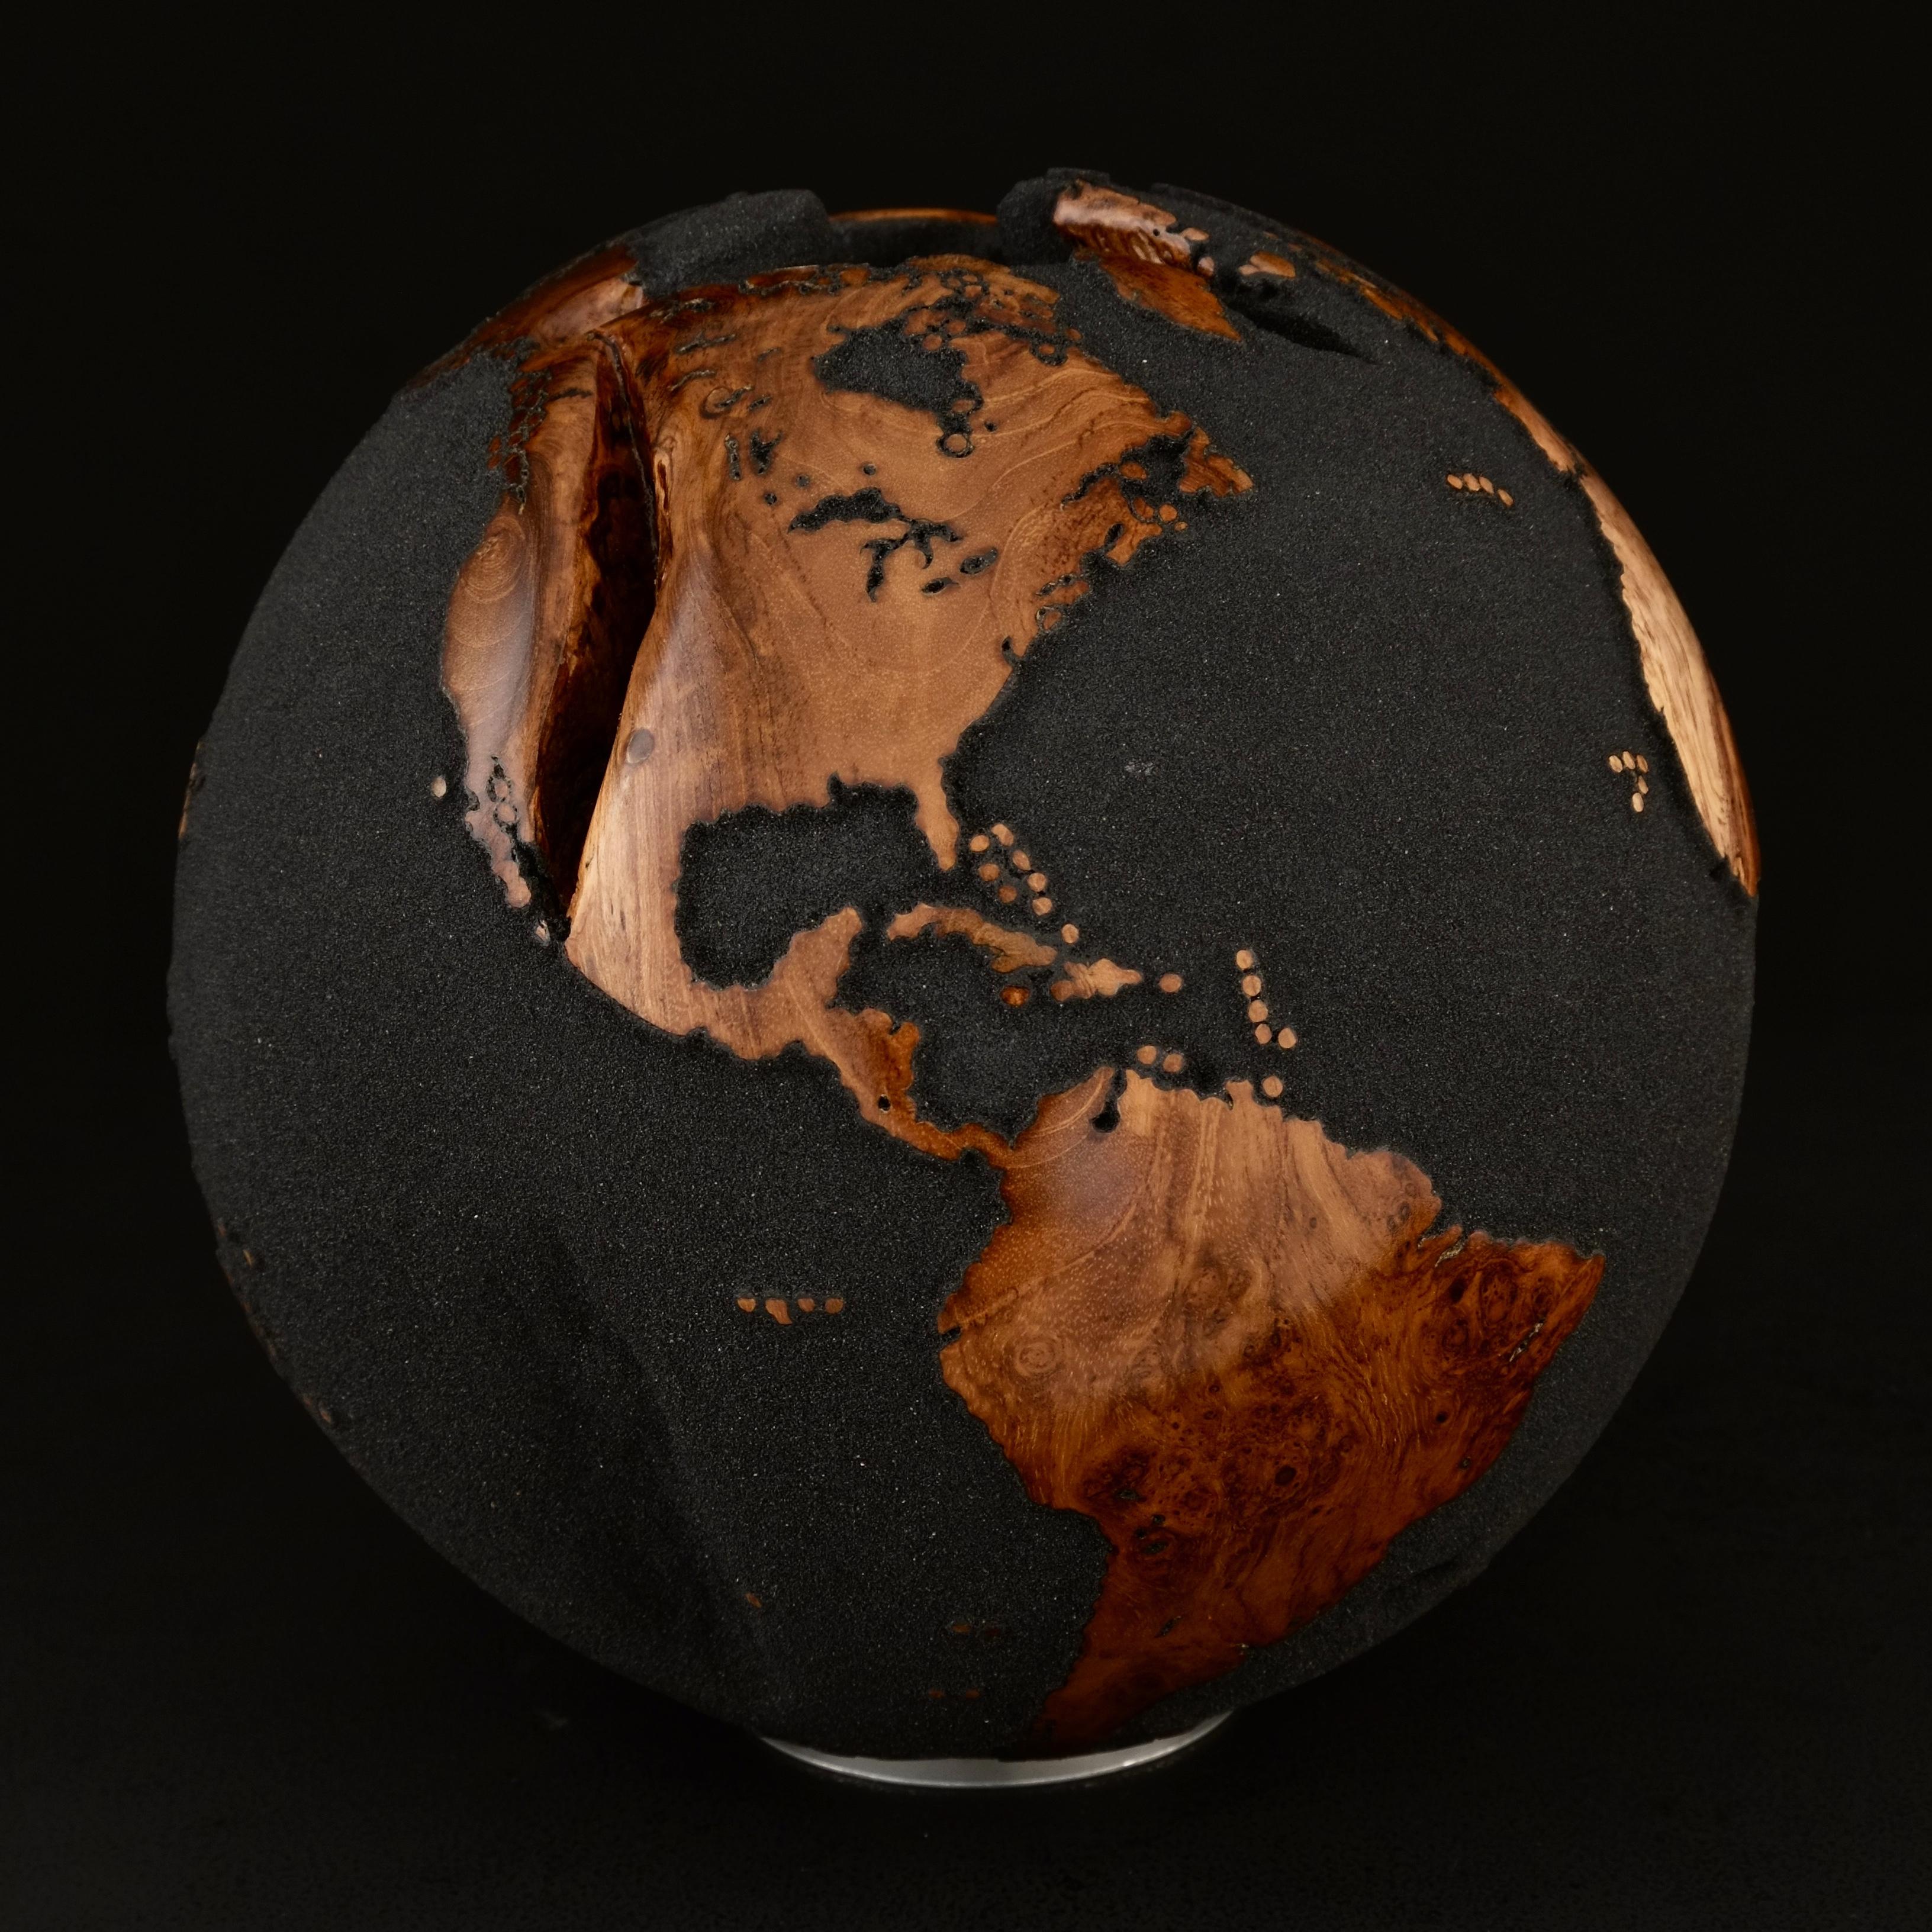 Le bois de teck et le sable de lave noir font de ce magnifique globe tournant une véritable sculpture.
Réalisée à partir d'un morceau de bois entier, la sculpture est façonnée en fonction de la croissance de l'arbre.
Posée sur un socle tournant, la